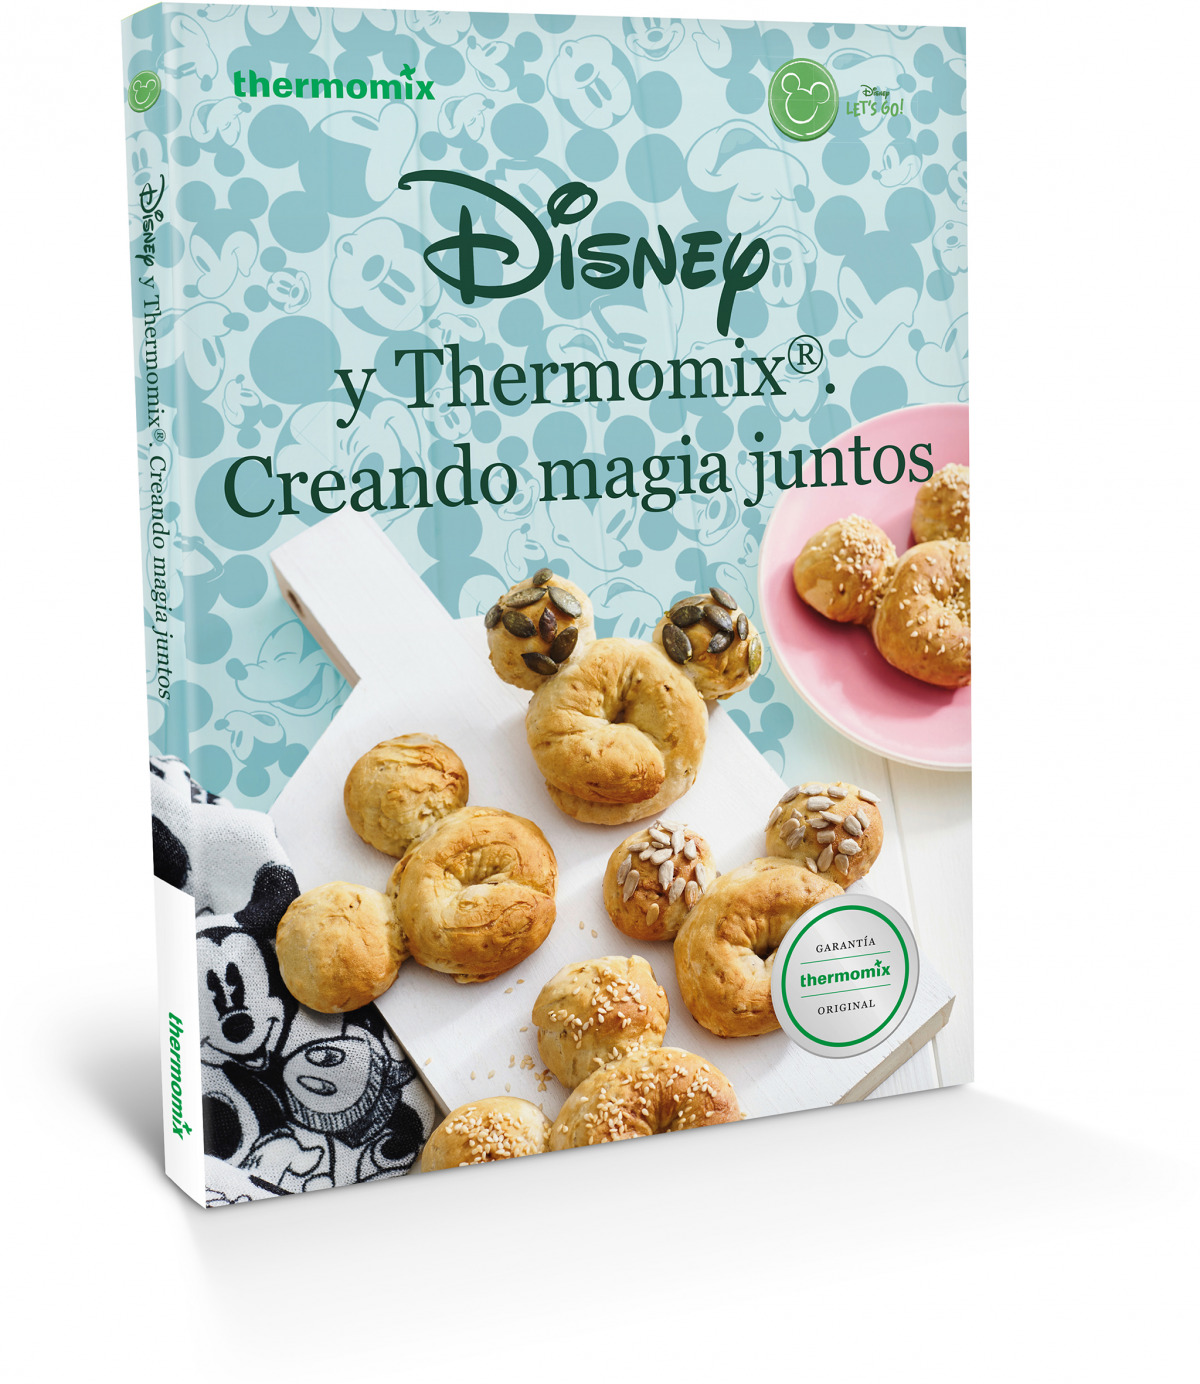 Disney y Thermomix: Creando magia juntos (Spanish Edition)